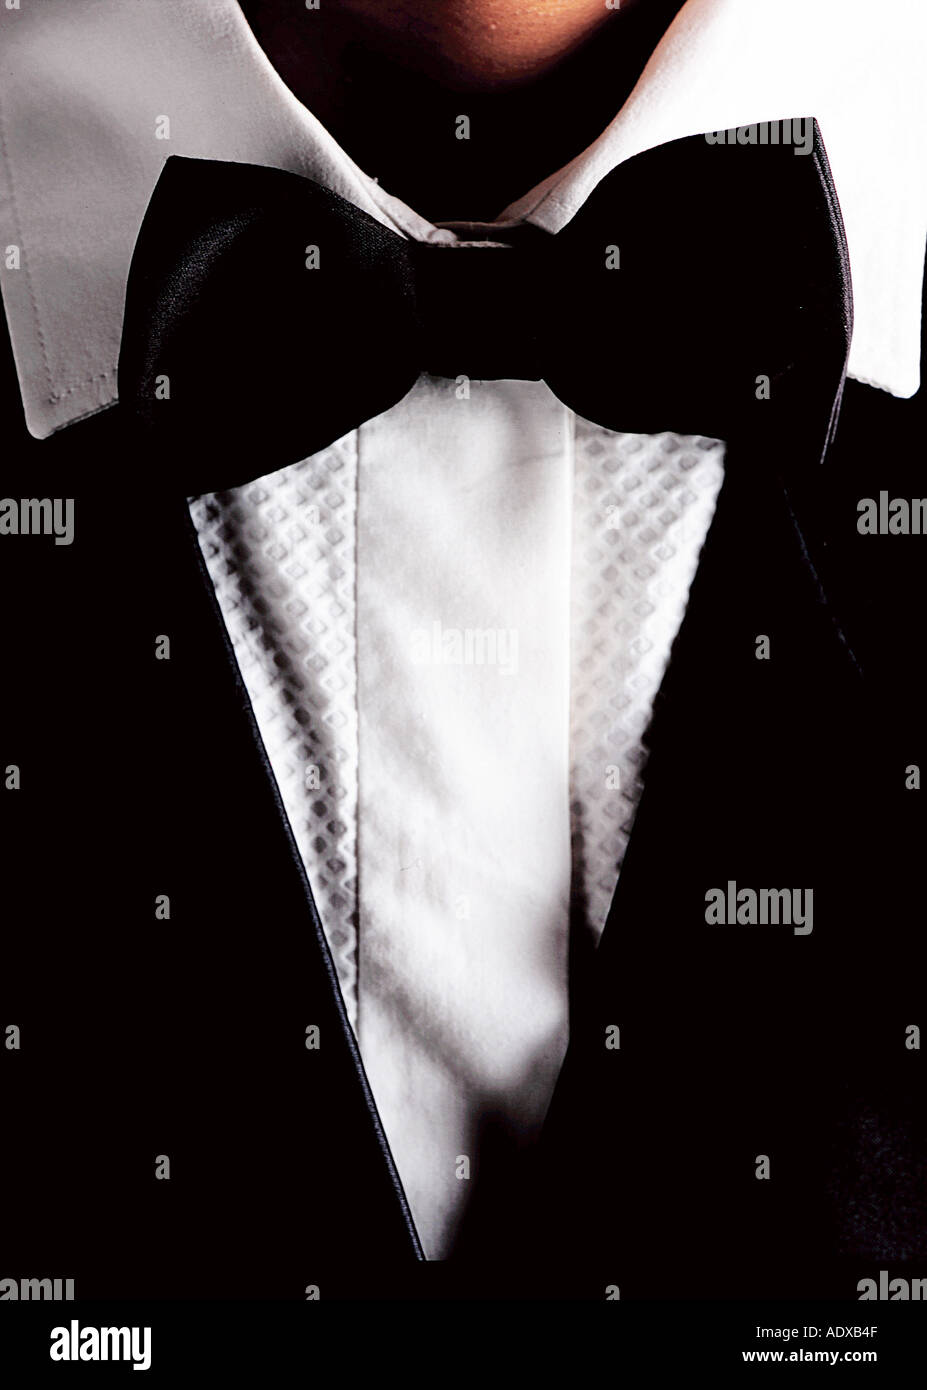 Tux Concepts smokings tuxedo costume soirée de code vestimentaire liens Noeud  papillon Noeud papillon cravate cravates col chemisier noir blanc v sm  Photo Stock - Alamy